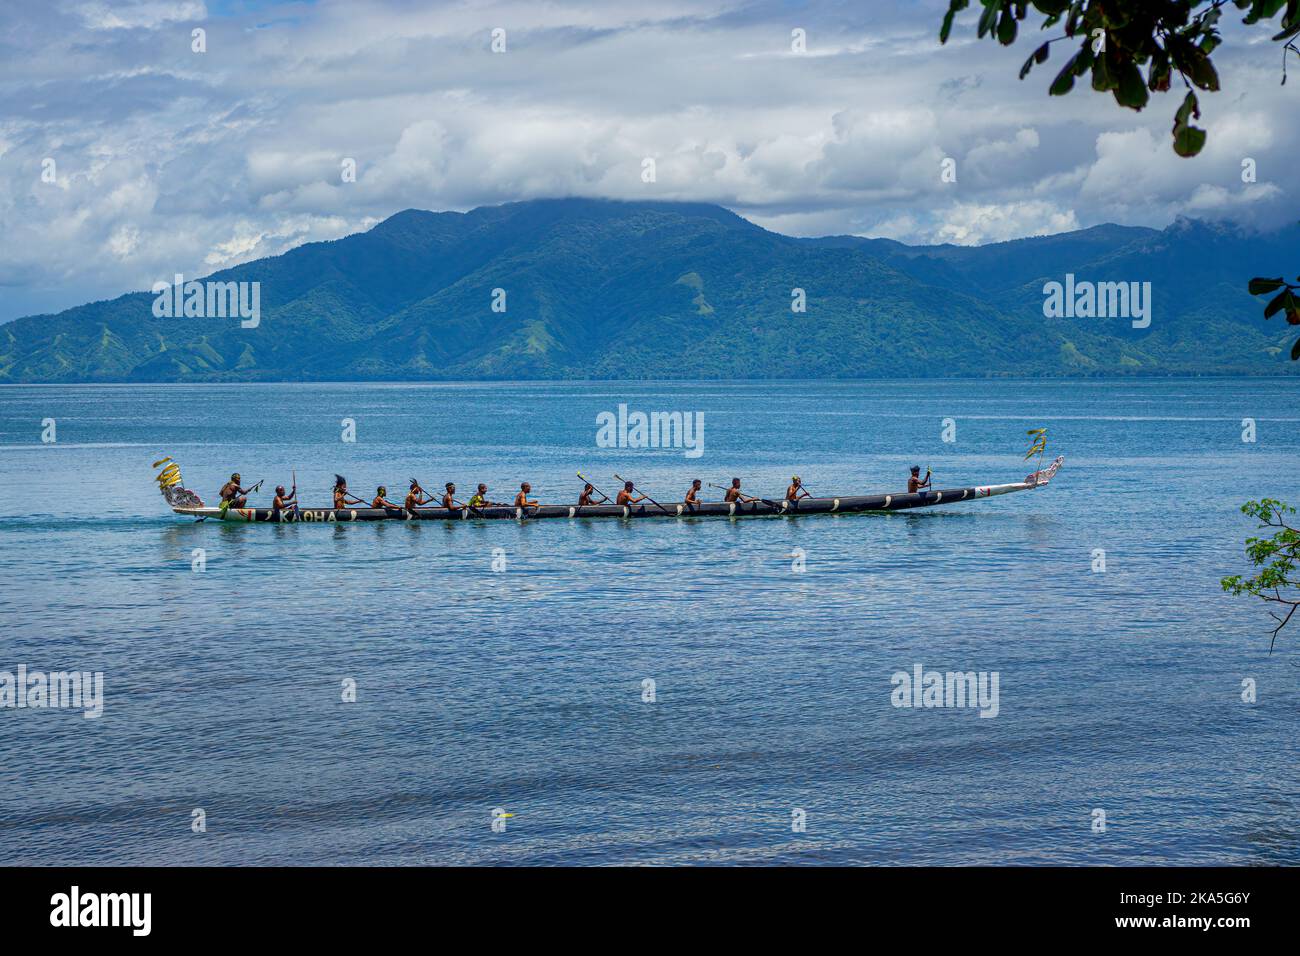 Pagaie indigene in costume tradizionale che mostrano canoe da sgabuzzi, Festival culturale Alotau, Provincia di Milne Bay, Papua Nuova Guinea Foto Stock